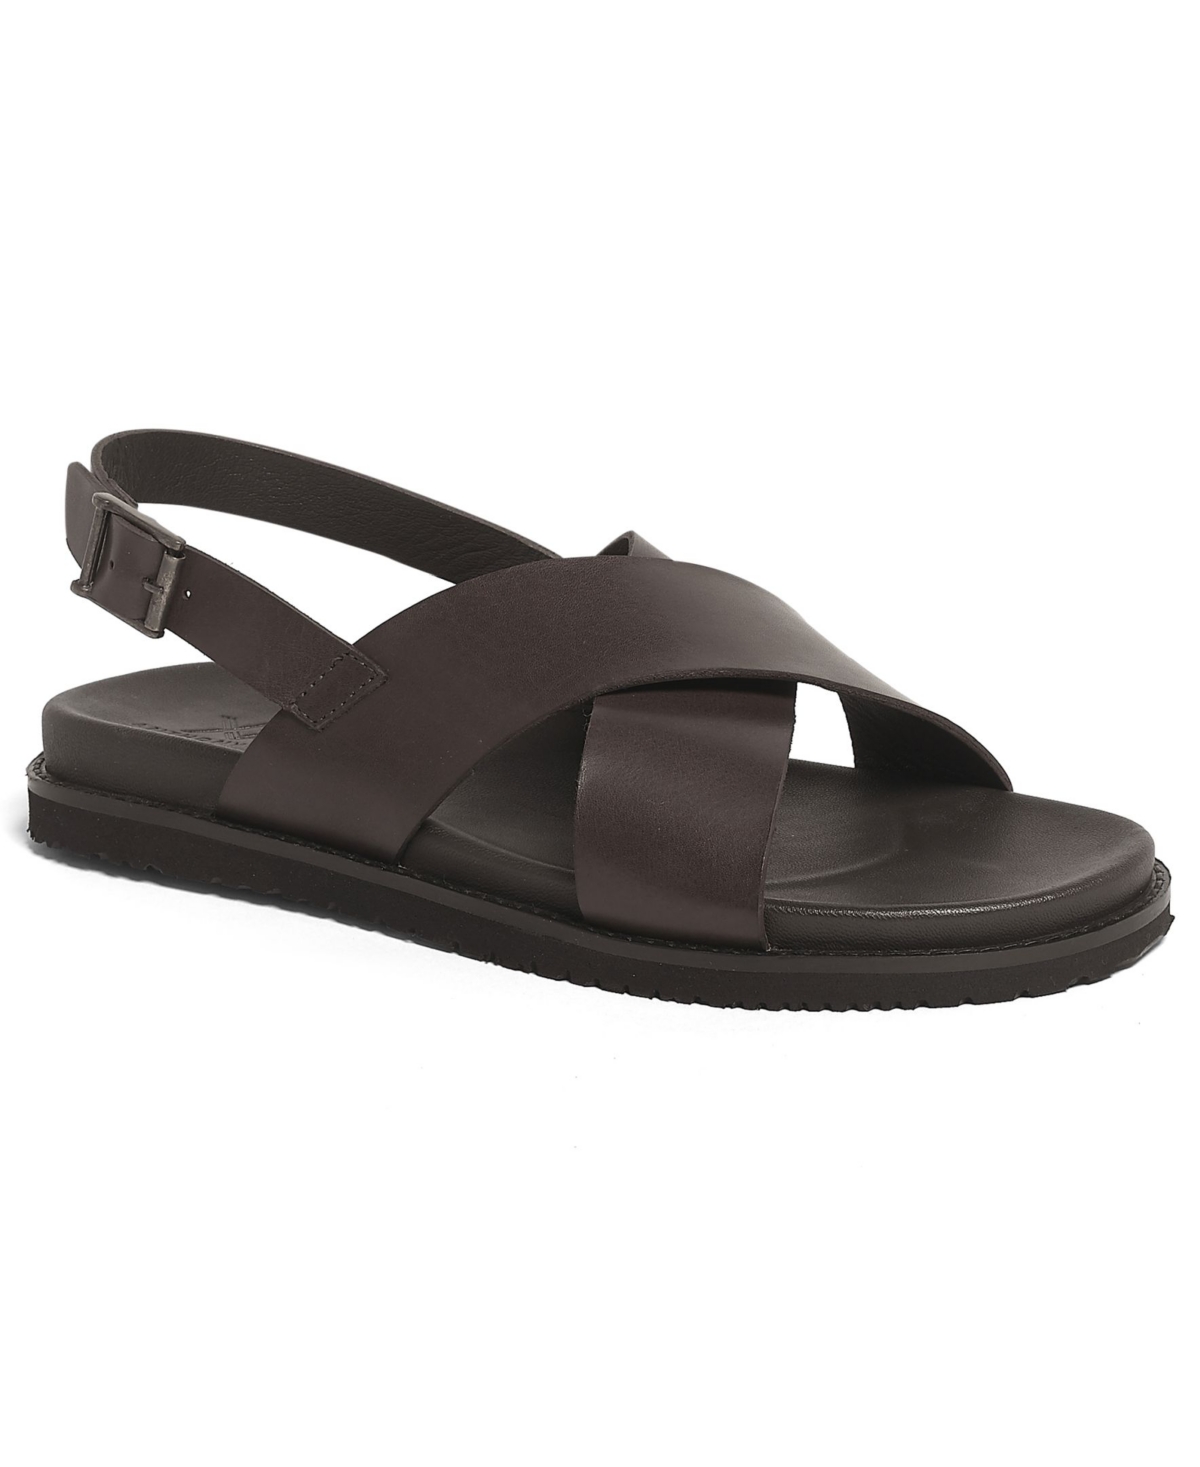 Men's Cancum Cross Strap Comfort Sandals - Brown